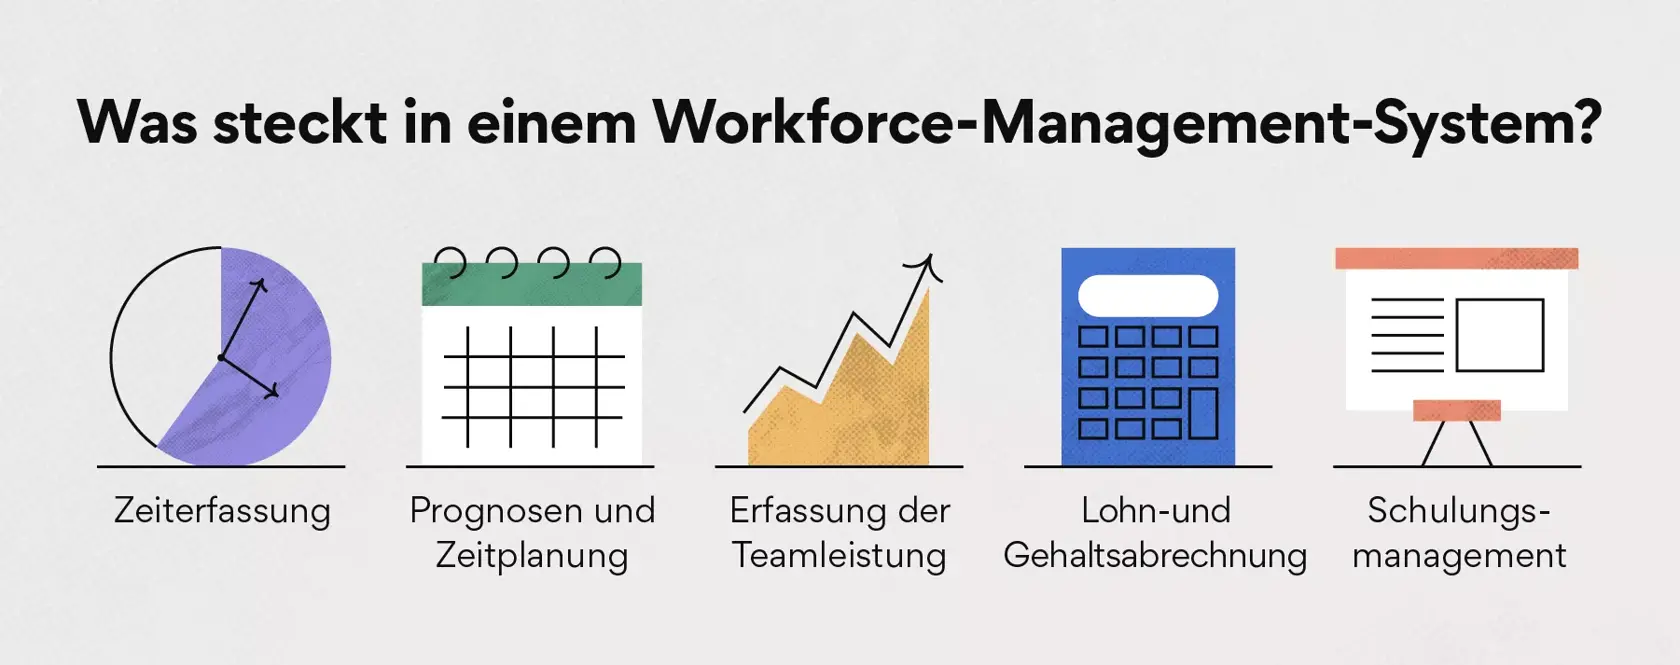 Was steckt in einem Workforce-Management-System?